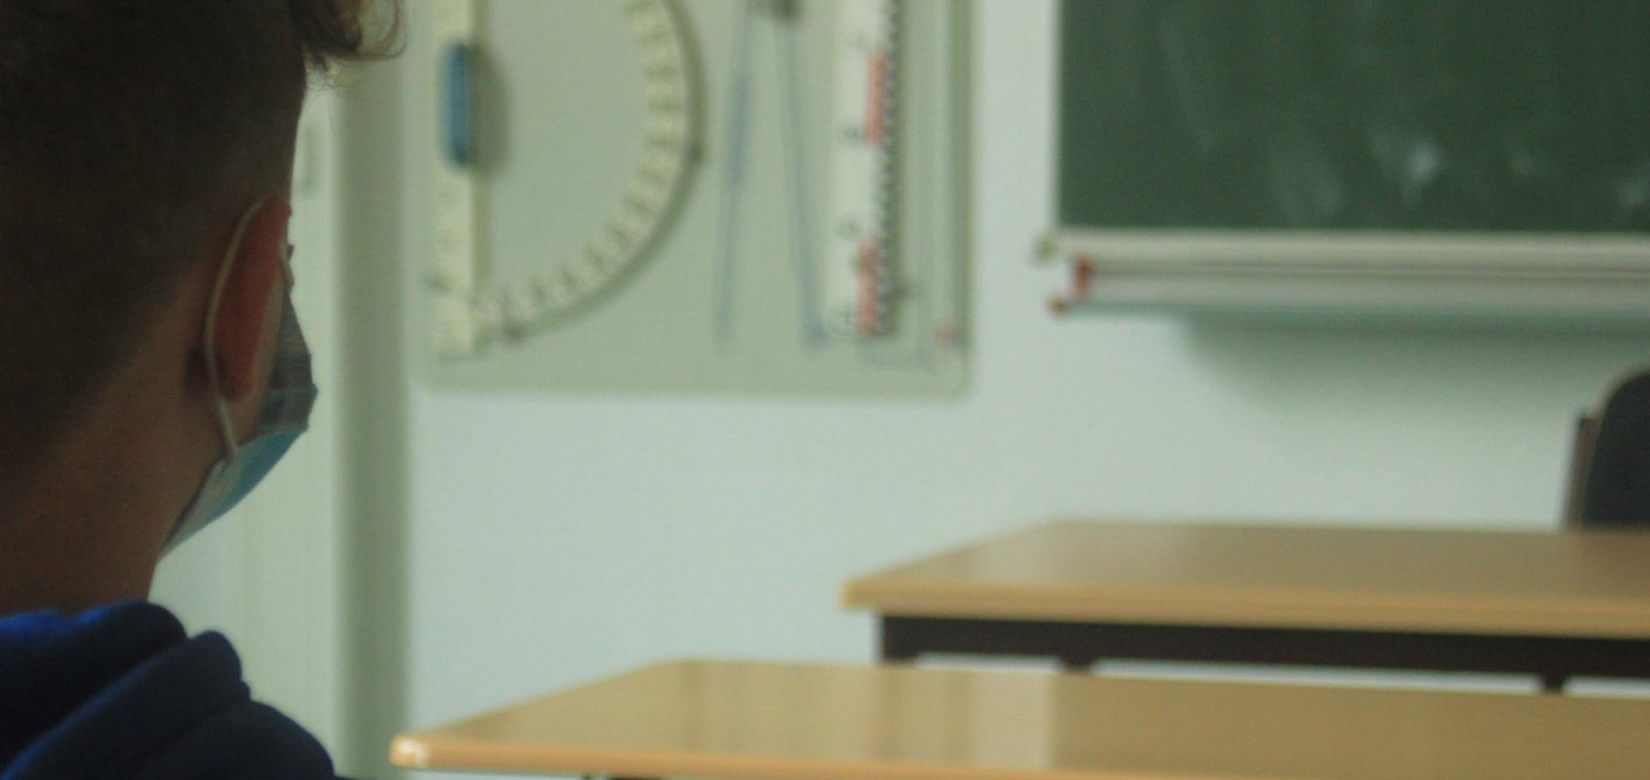 Κορονοϊός: Η υπουργός Παιδείας απαντά γιατί δεν έκλεισαν όλα τα σχολεία - Κι ας ήταν "ευκολότερο"